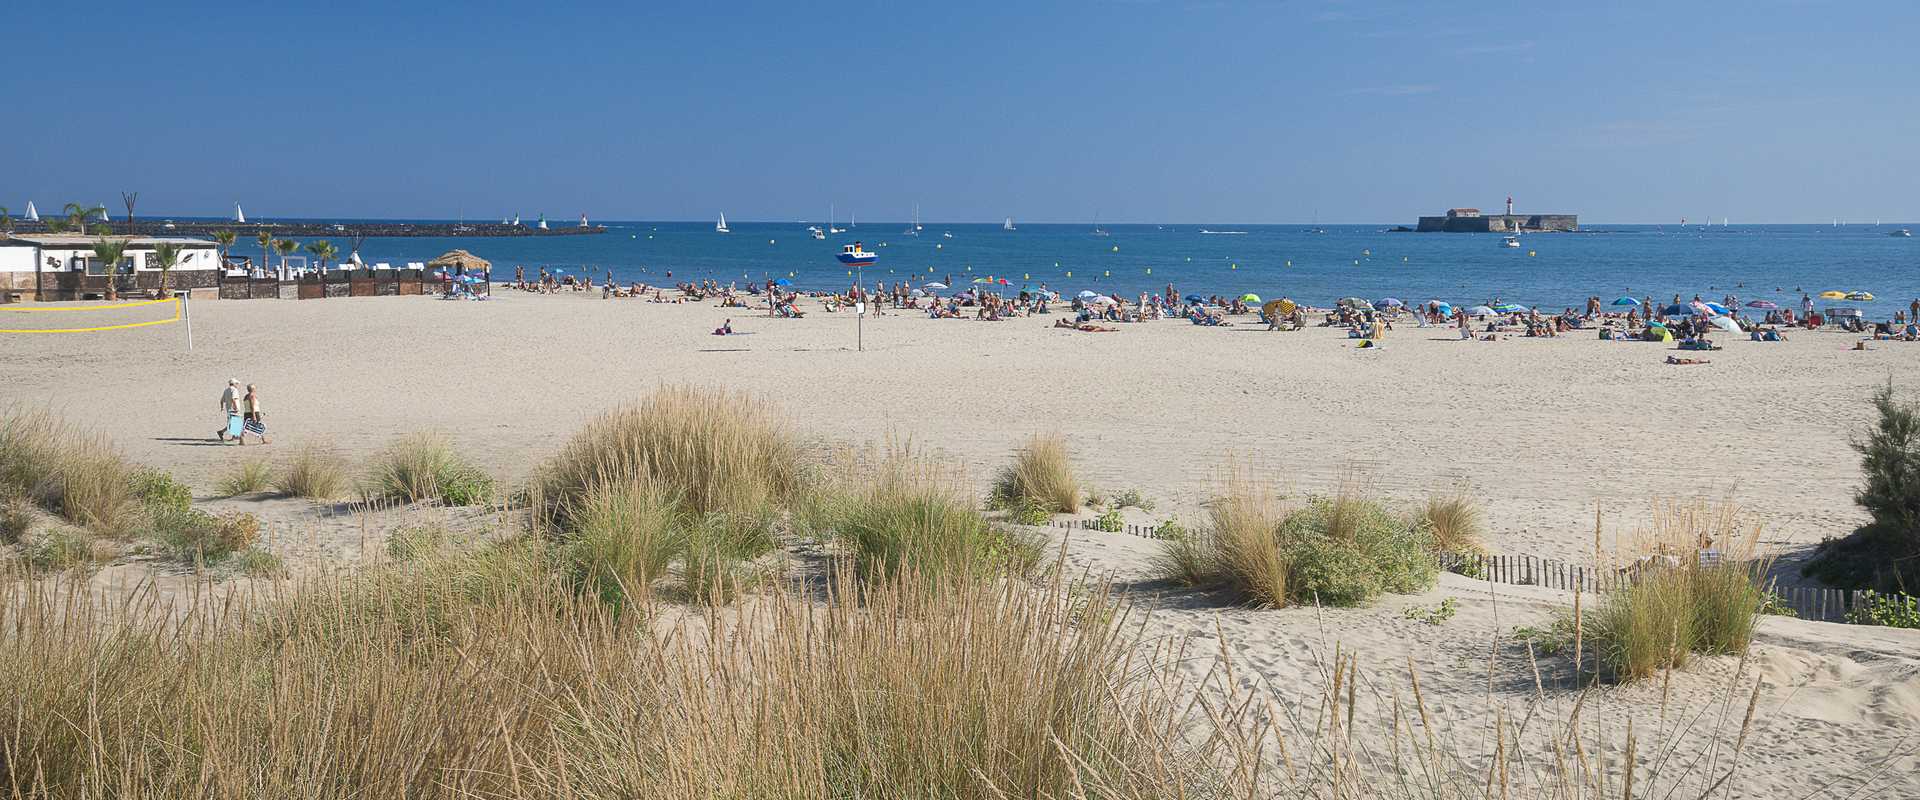 Les plus belles plages de l'Hérault, plage Richelieu au Cap d'Agde